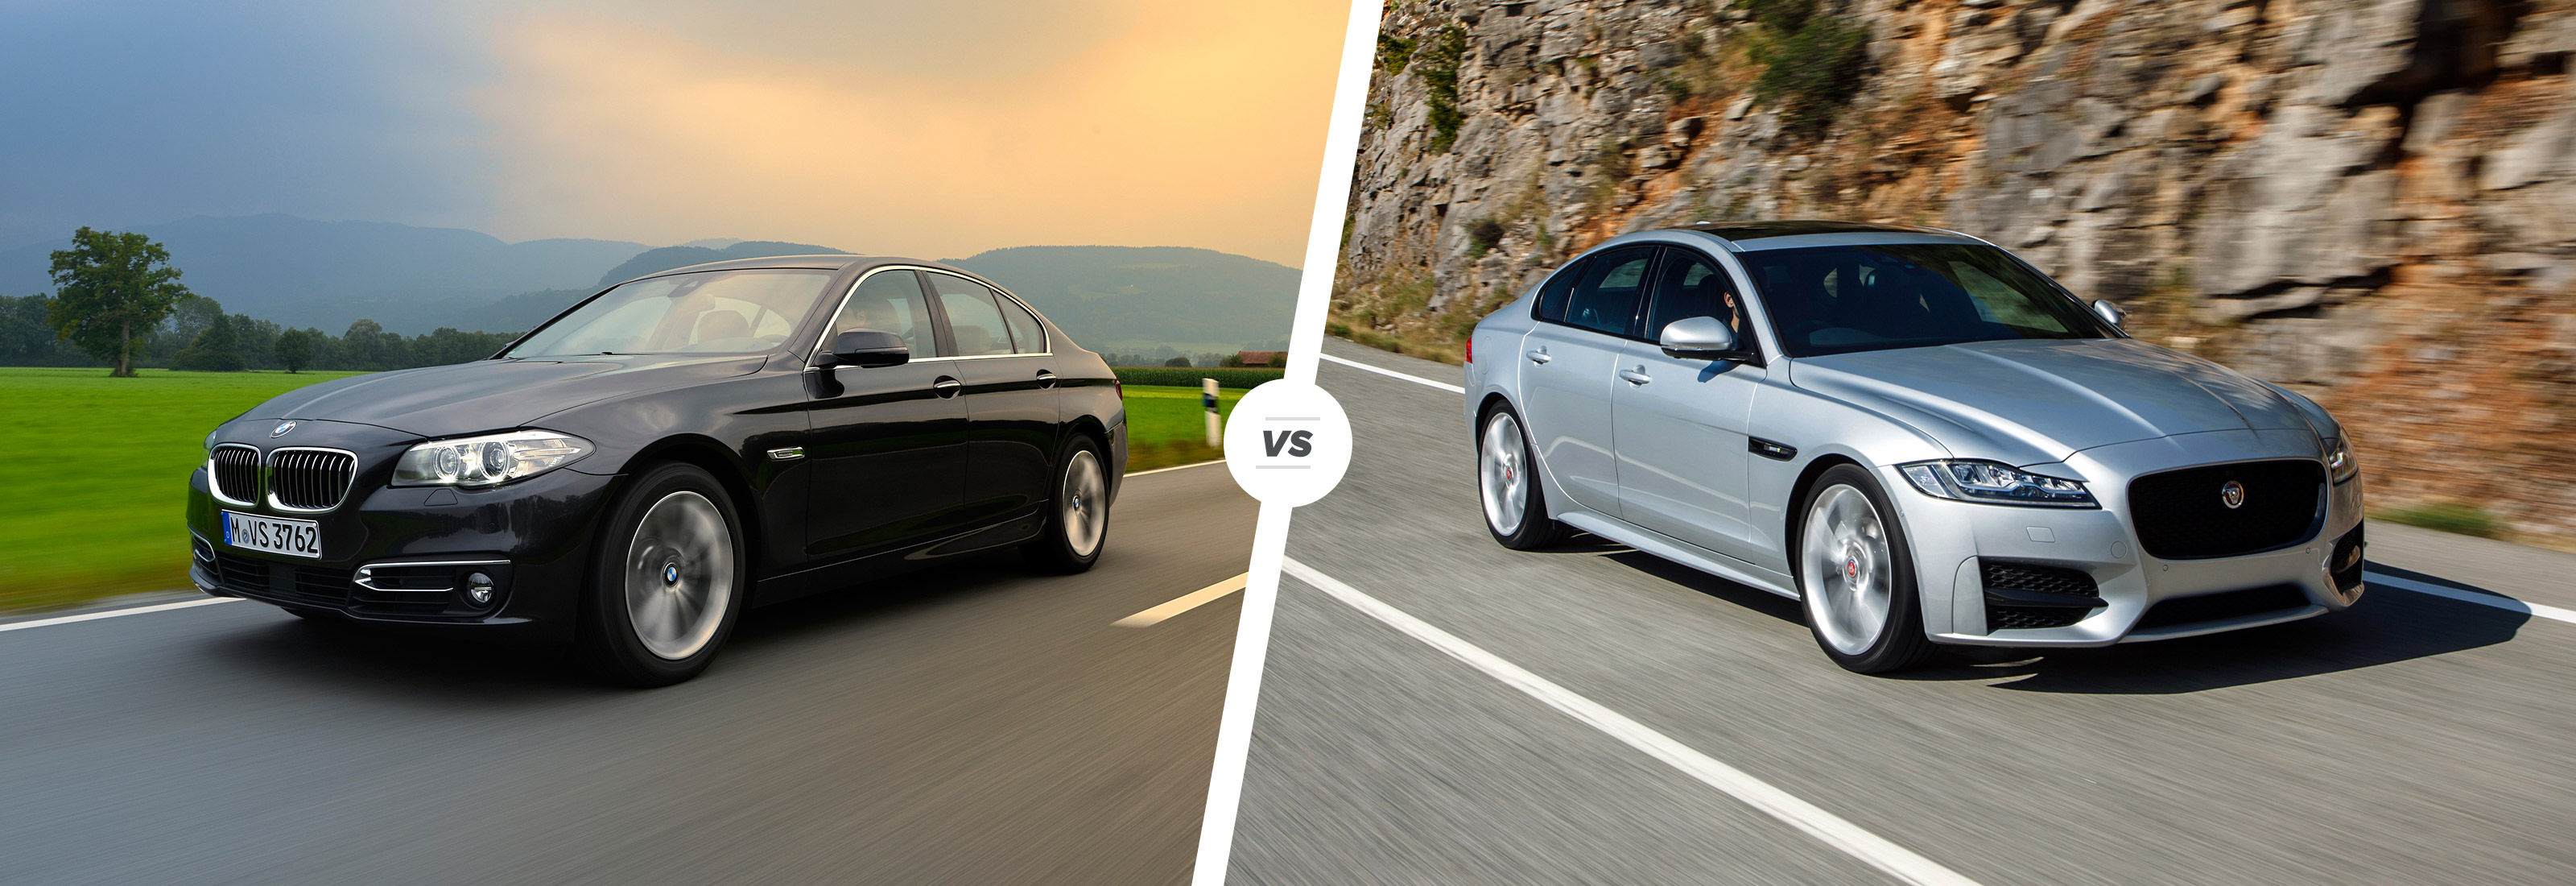 BMW 5 Series vs Jaguar XE  CarsGuide